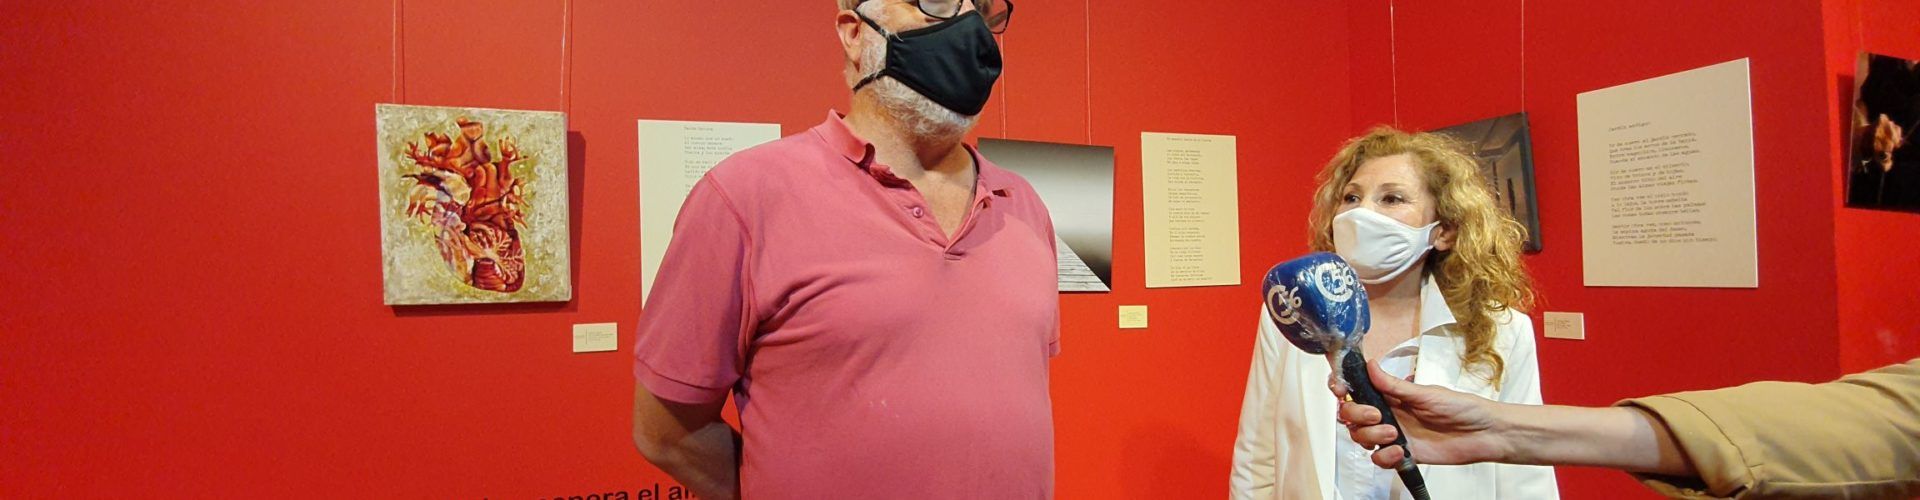 Vídeo i fotos: exposició a Vinaròs en record de Luis Cernuda